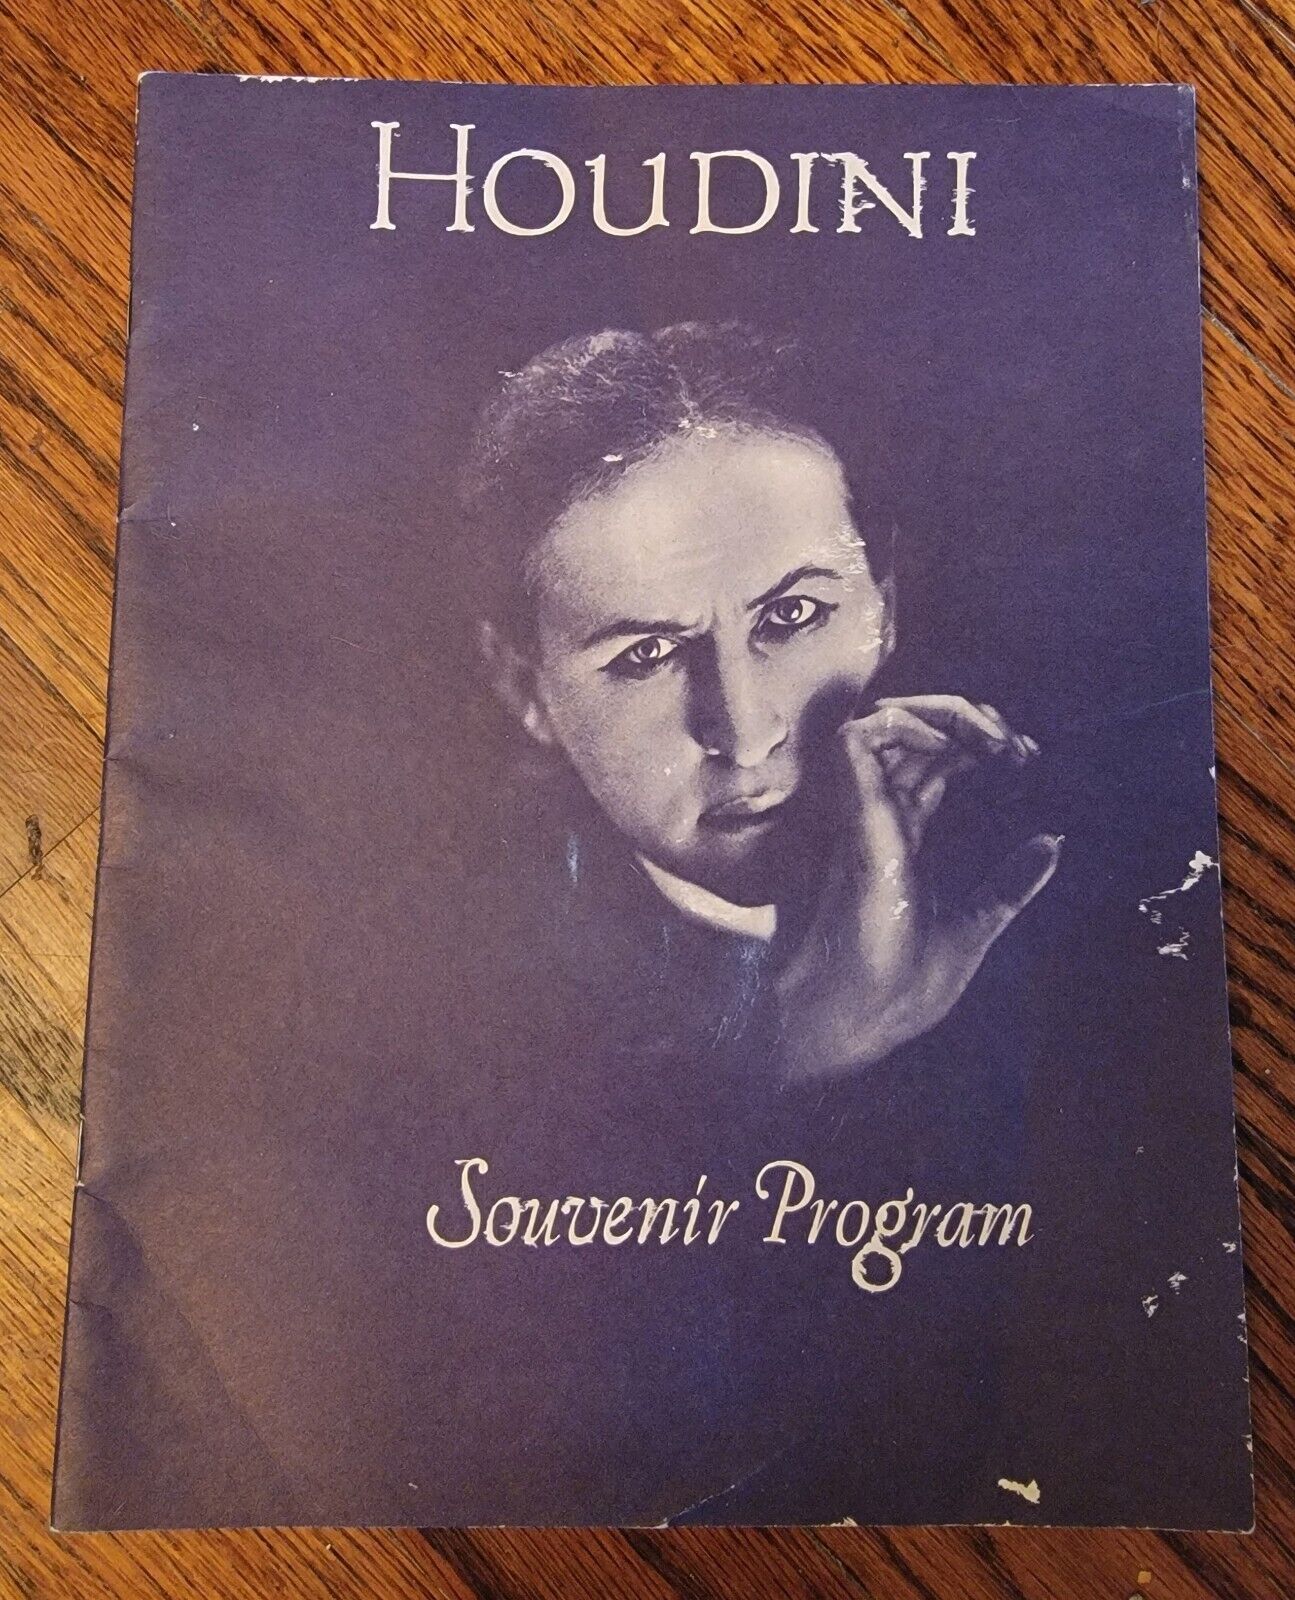 Houdini Souvenir Program, 1979 Jacobs Antique Jewels Series 